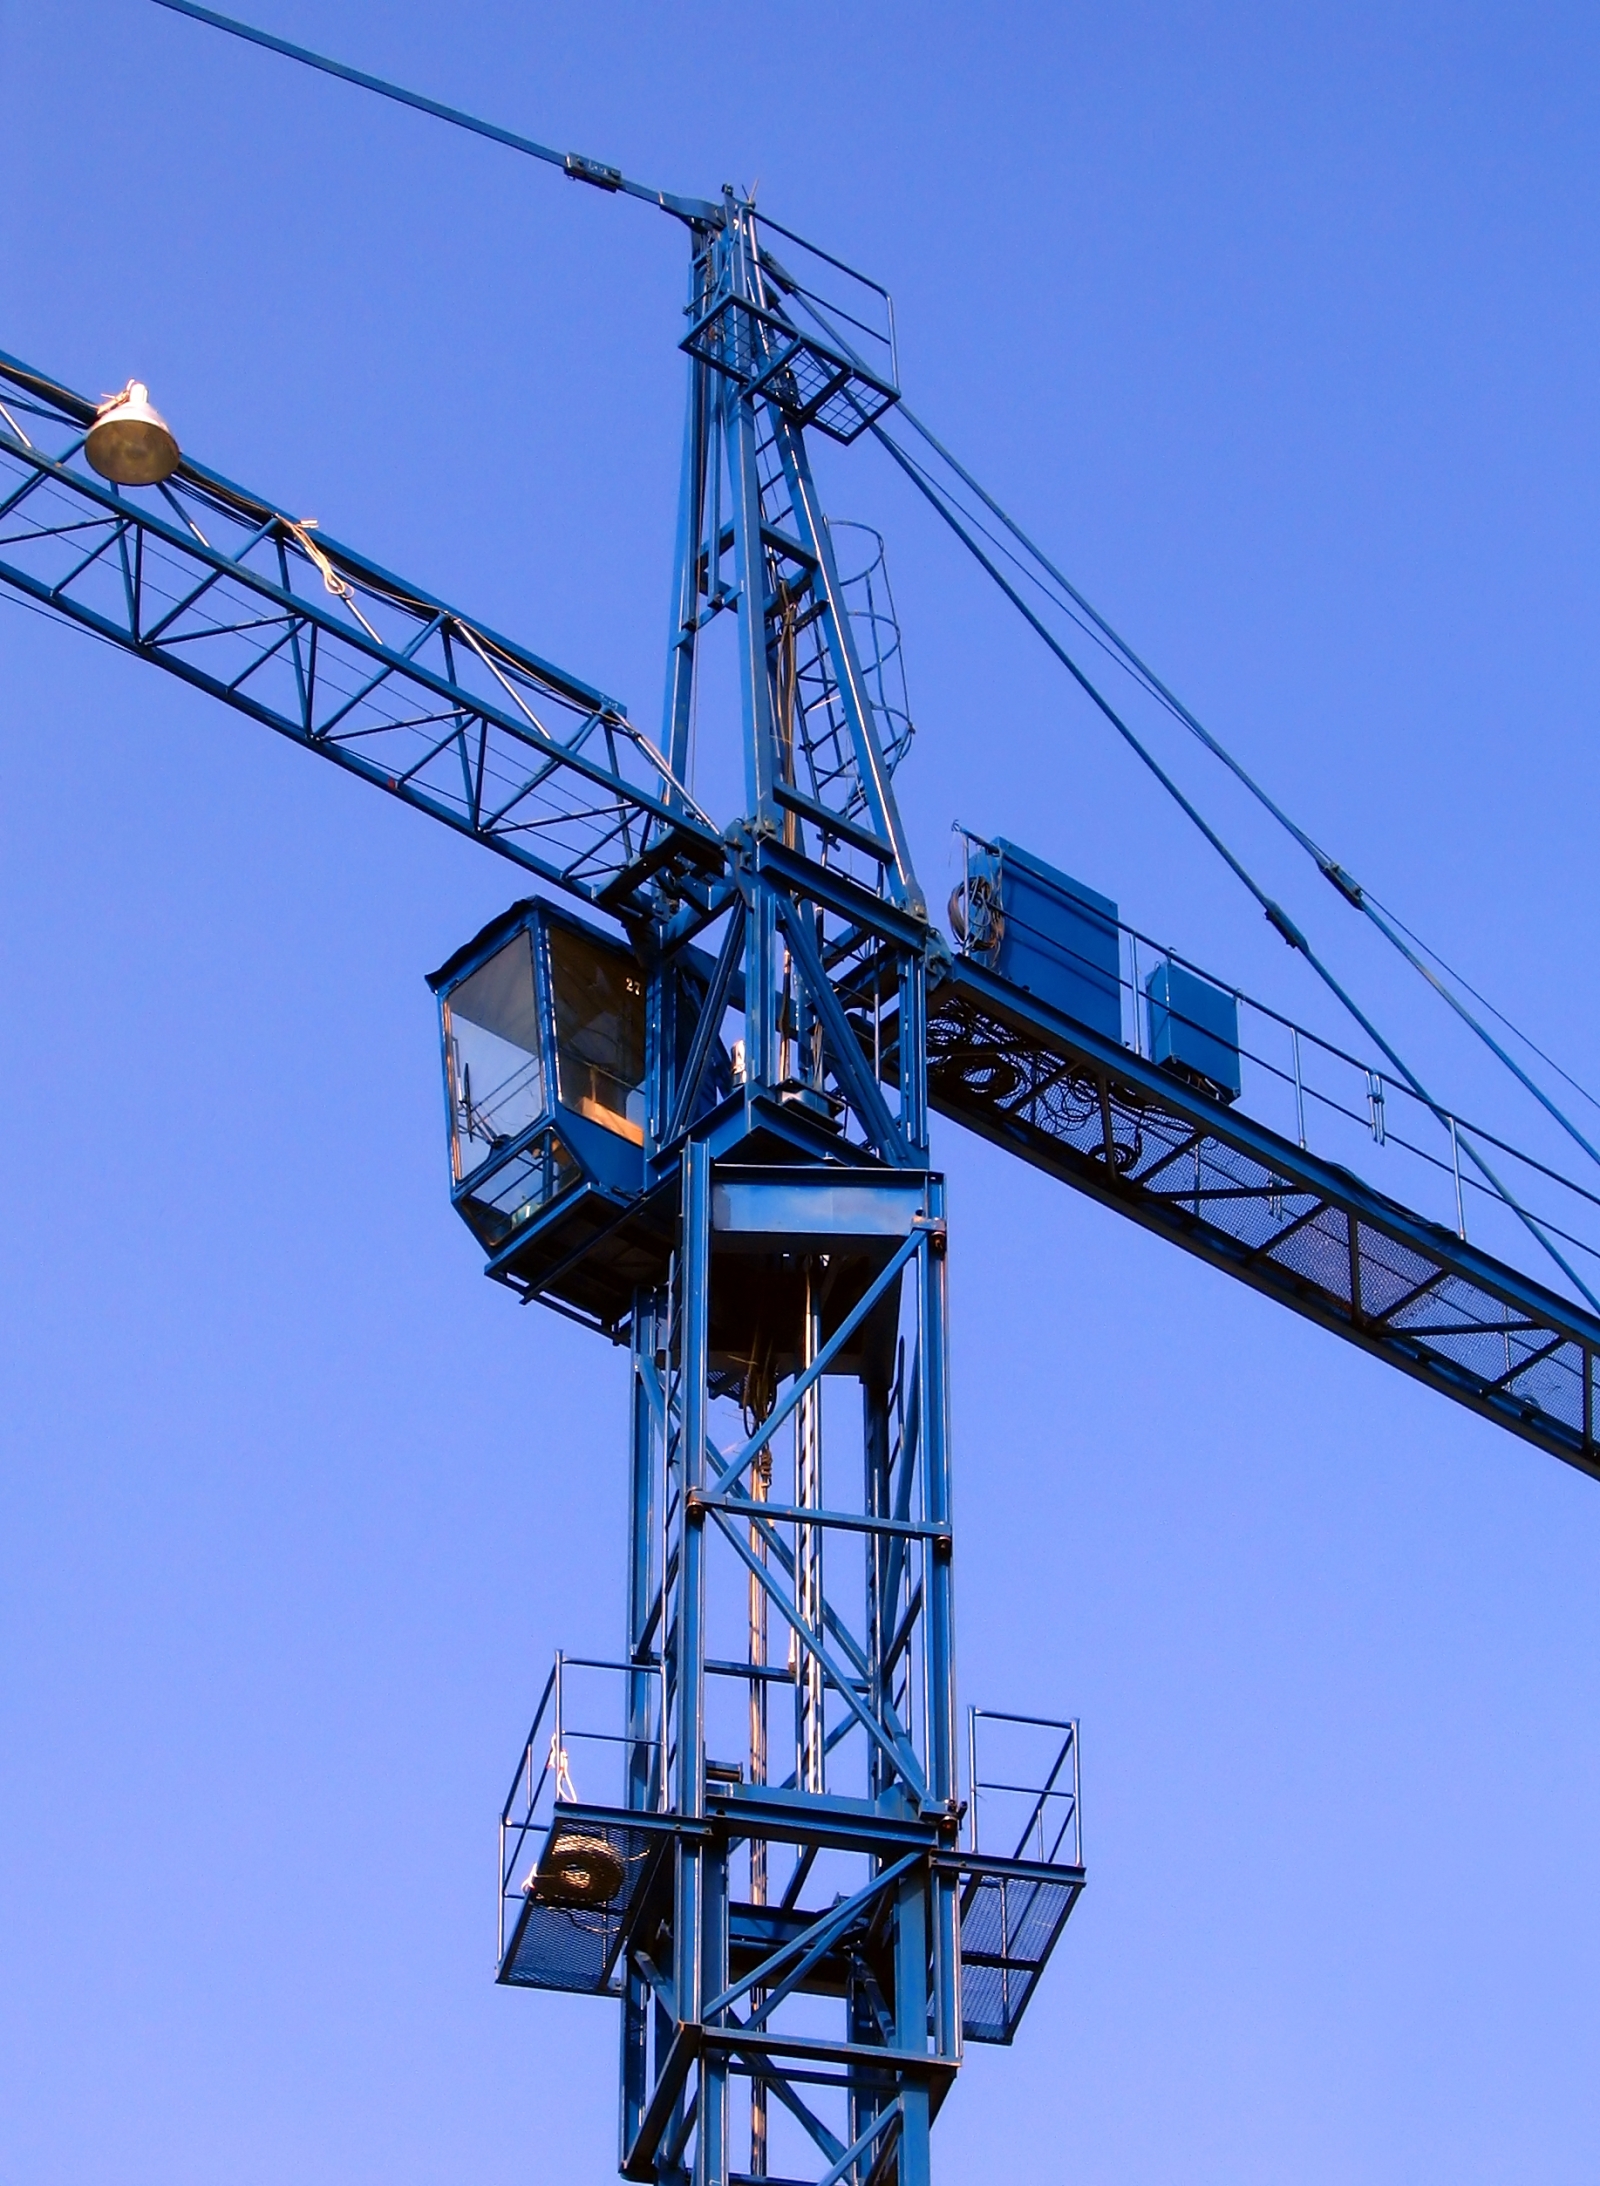 Crane against a blue sky photo